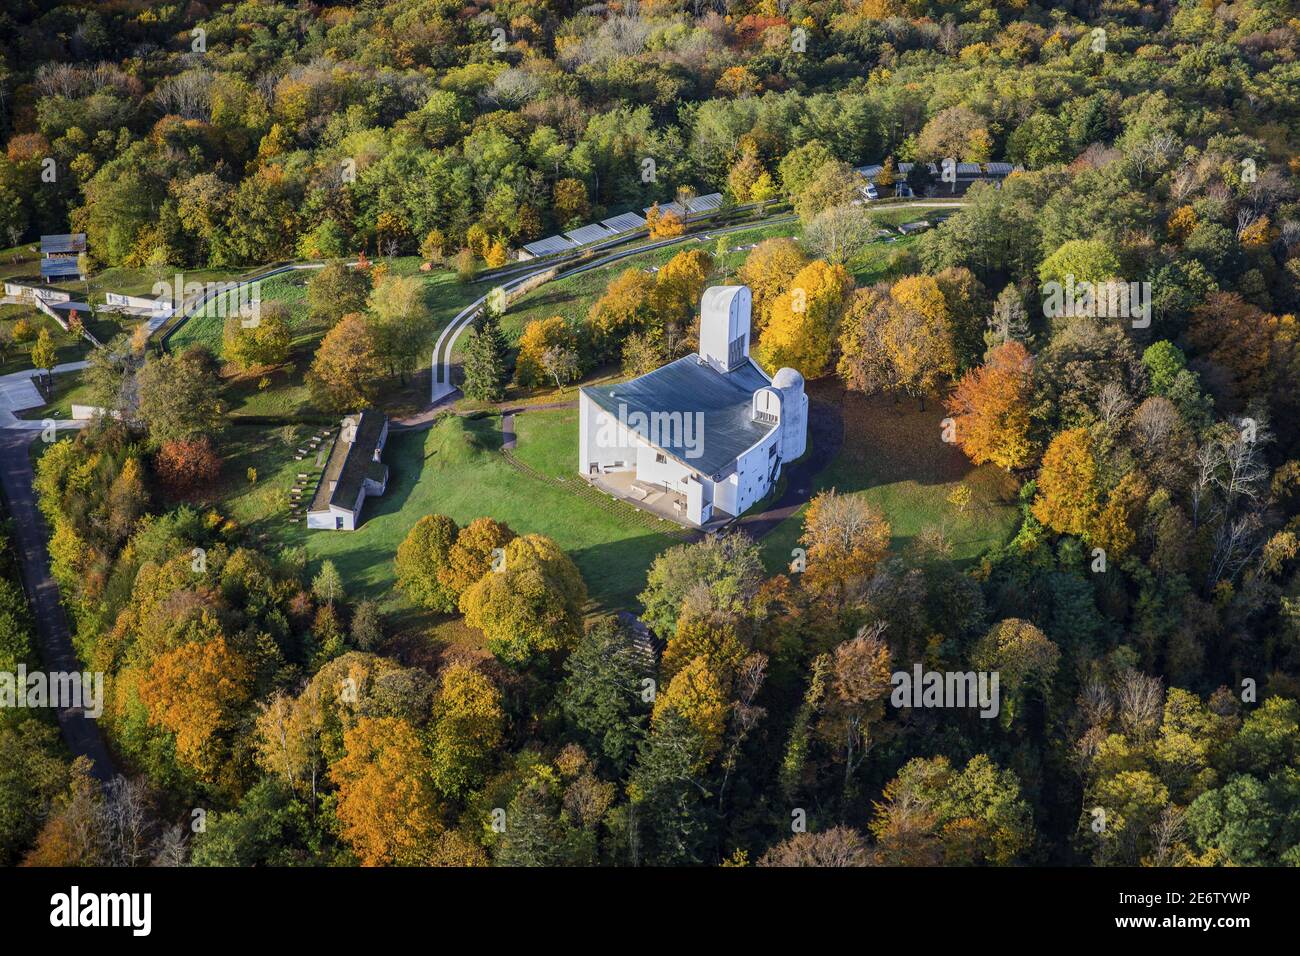 Francia, Haute-Saone, Ronchamp, Notre Dame du Haut por el arquitecto le Corbusier, un sitio declarado Patrimonio de la Humanidad por la UNESCO (vista aérea) Foto de stock